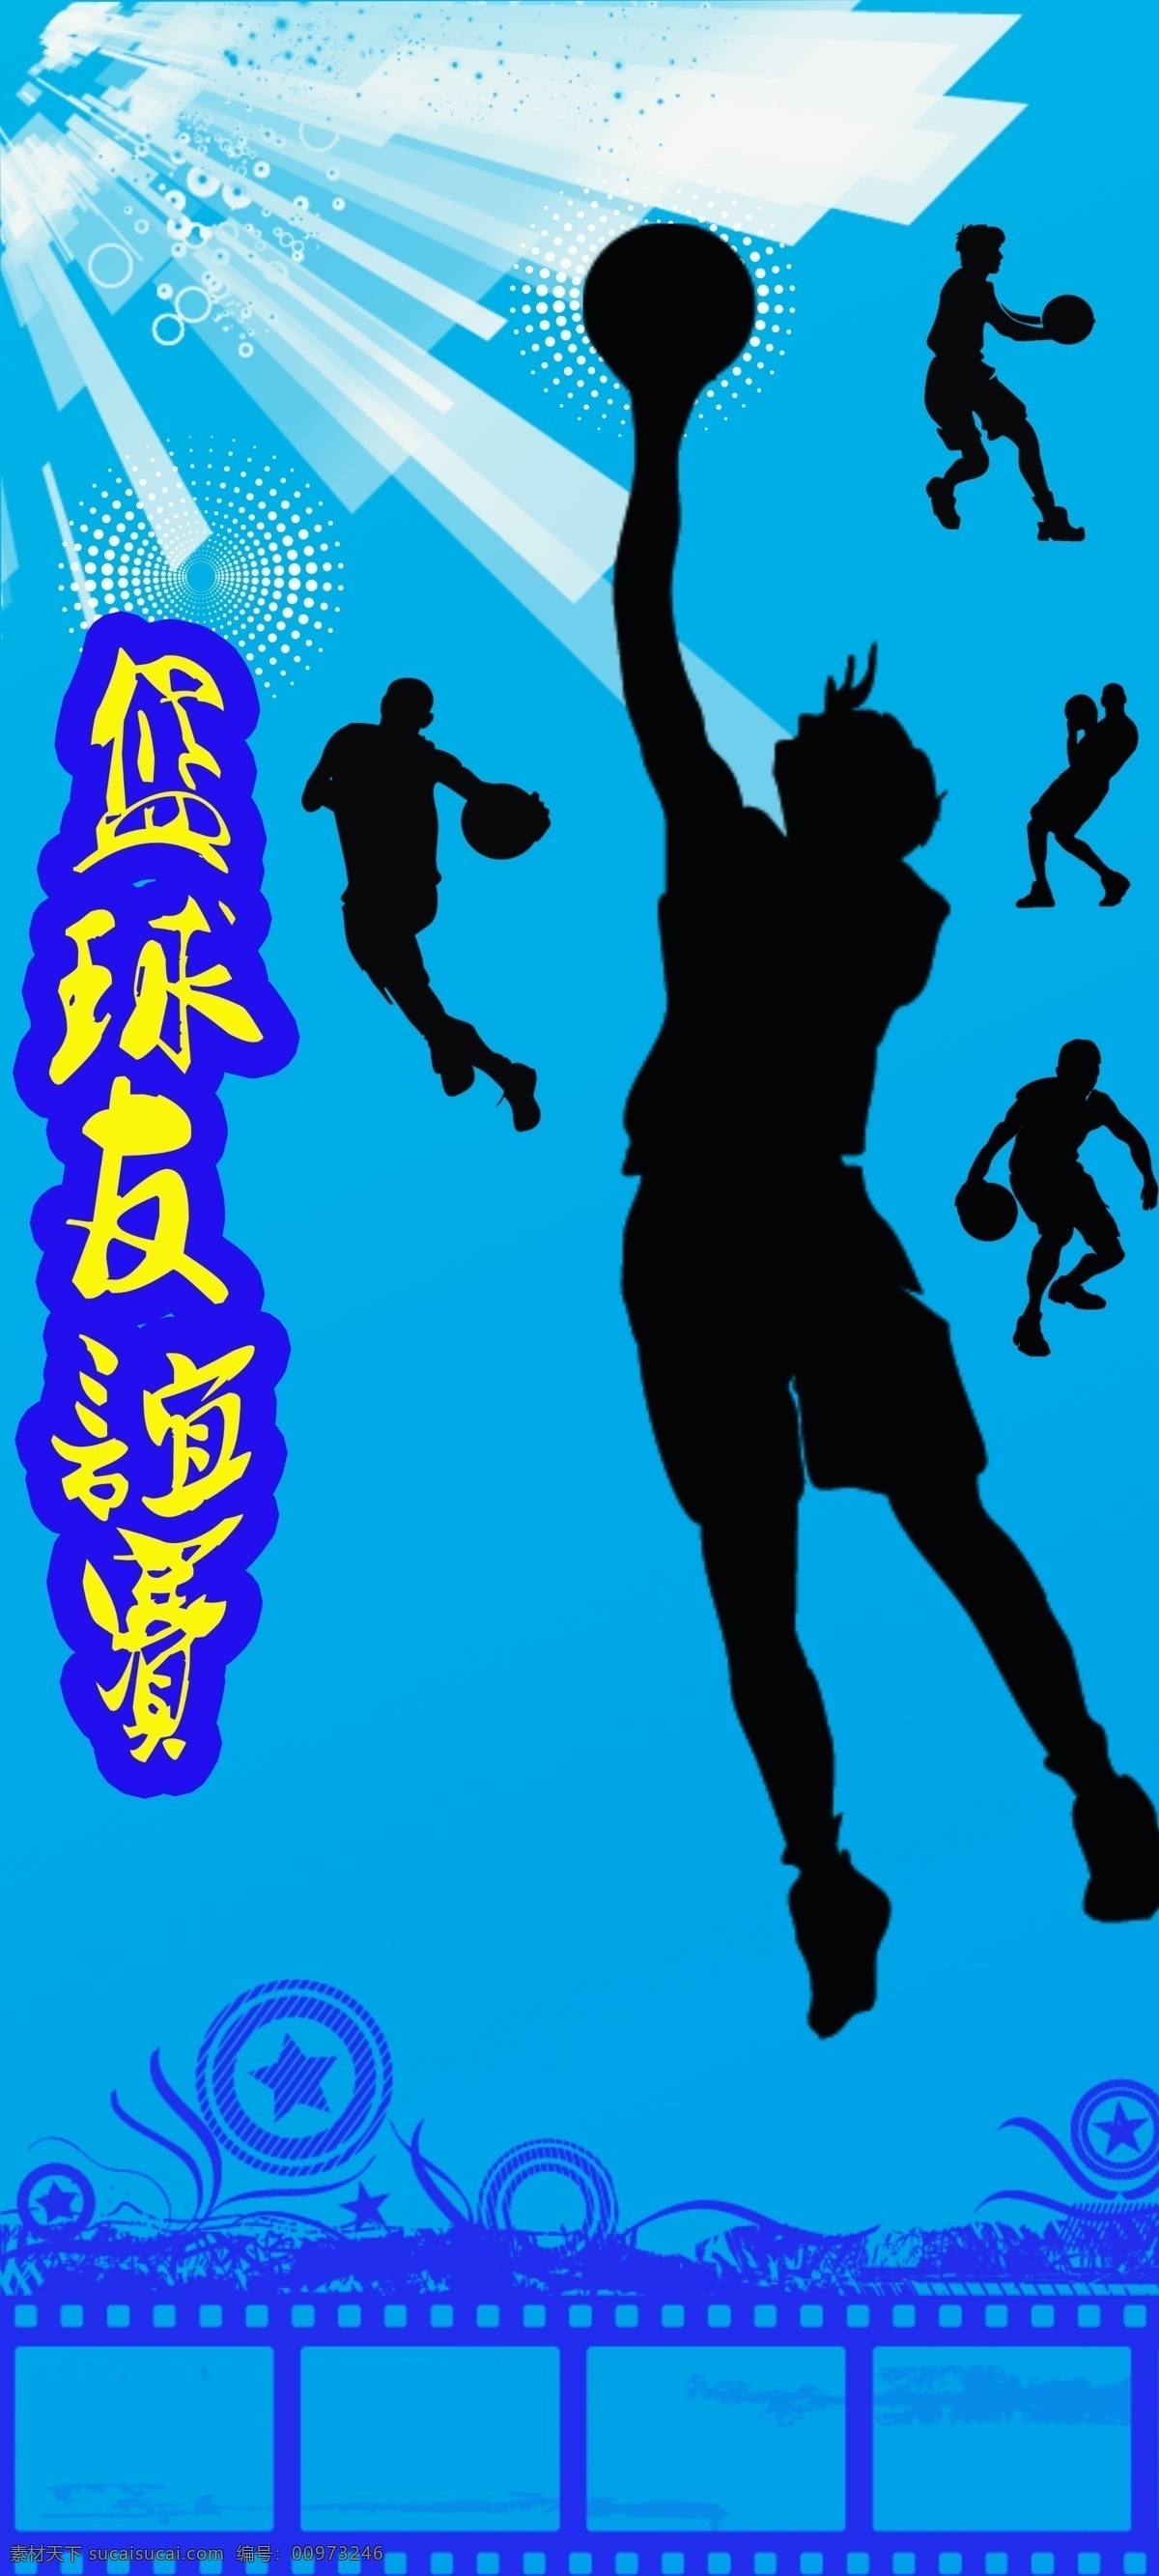 广告设计模板 花纹 篮球 篮球赛 篮球赛海报 人物剪影 源文件 海报 模板下载 其他海报设计